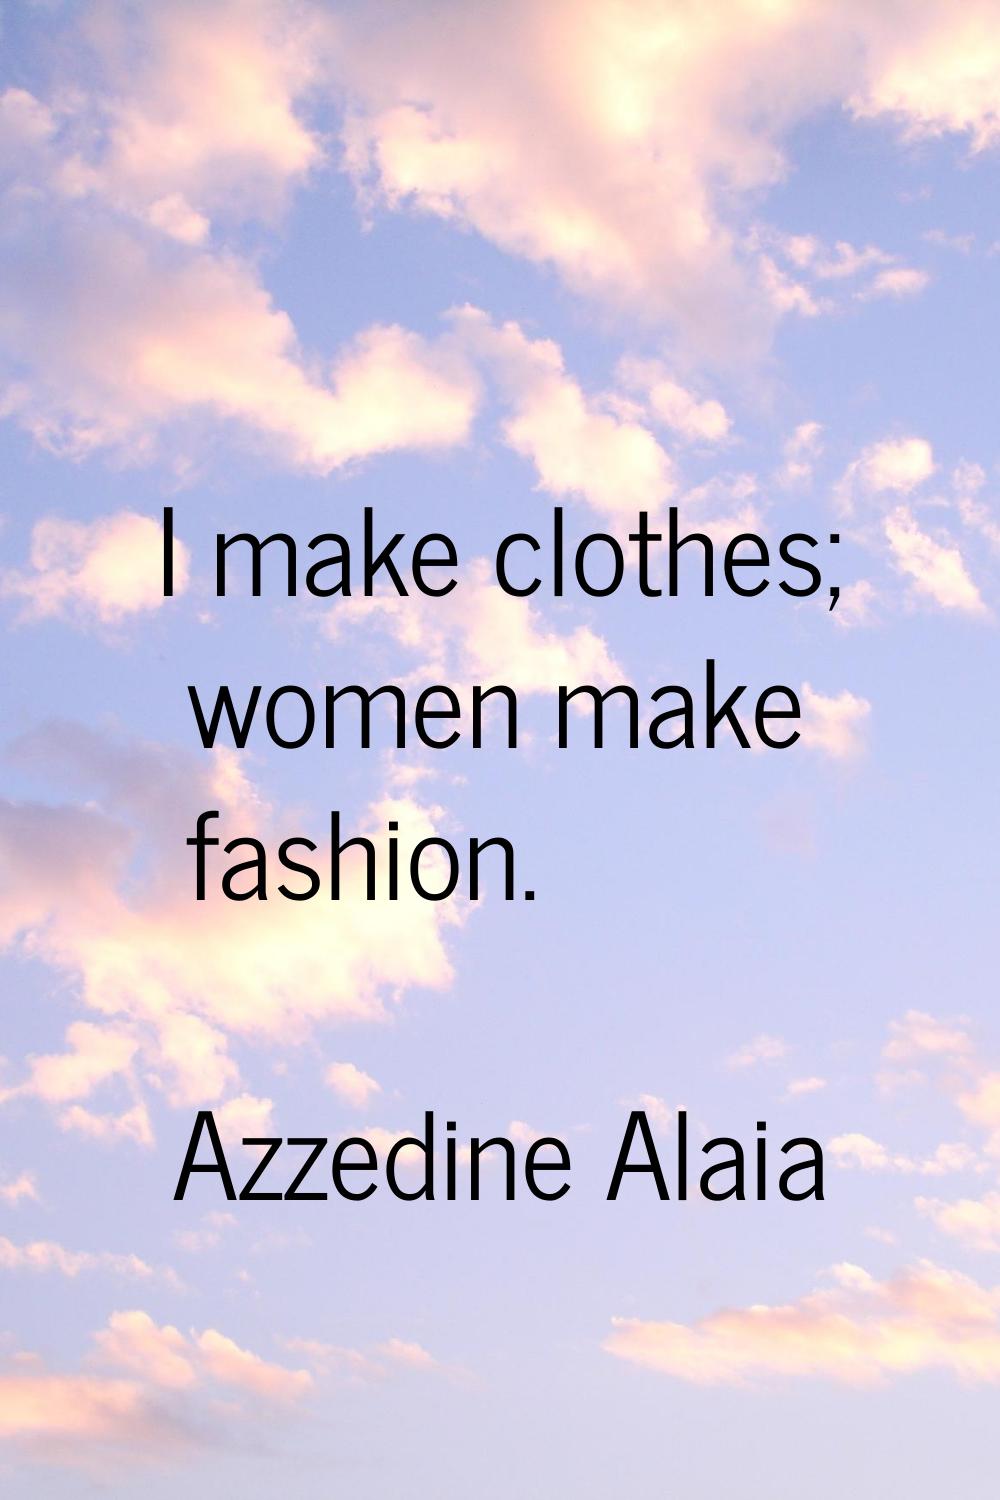 I make clothes; women make fashion.